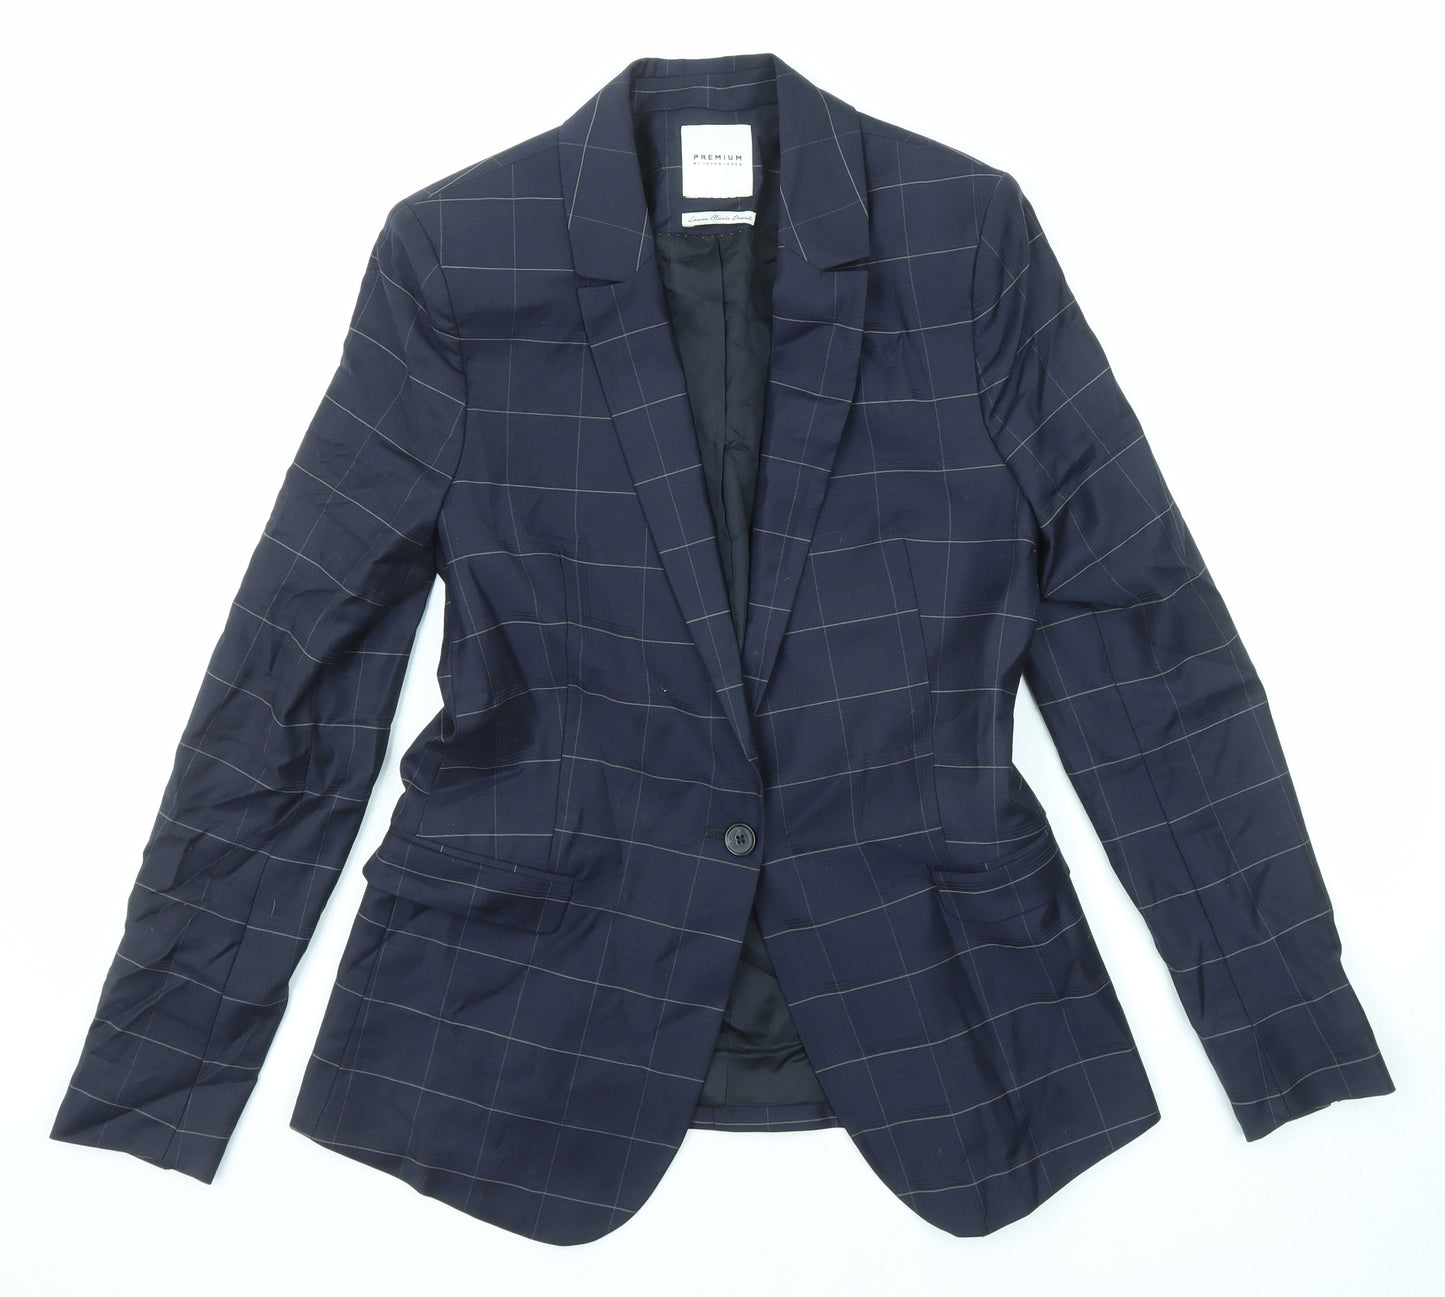 JACK & JONES Mens Blue Check Polyester Jacket Suit Jacket Size 36 Regular